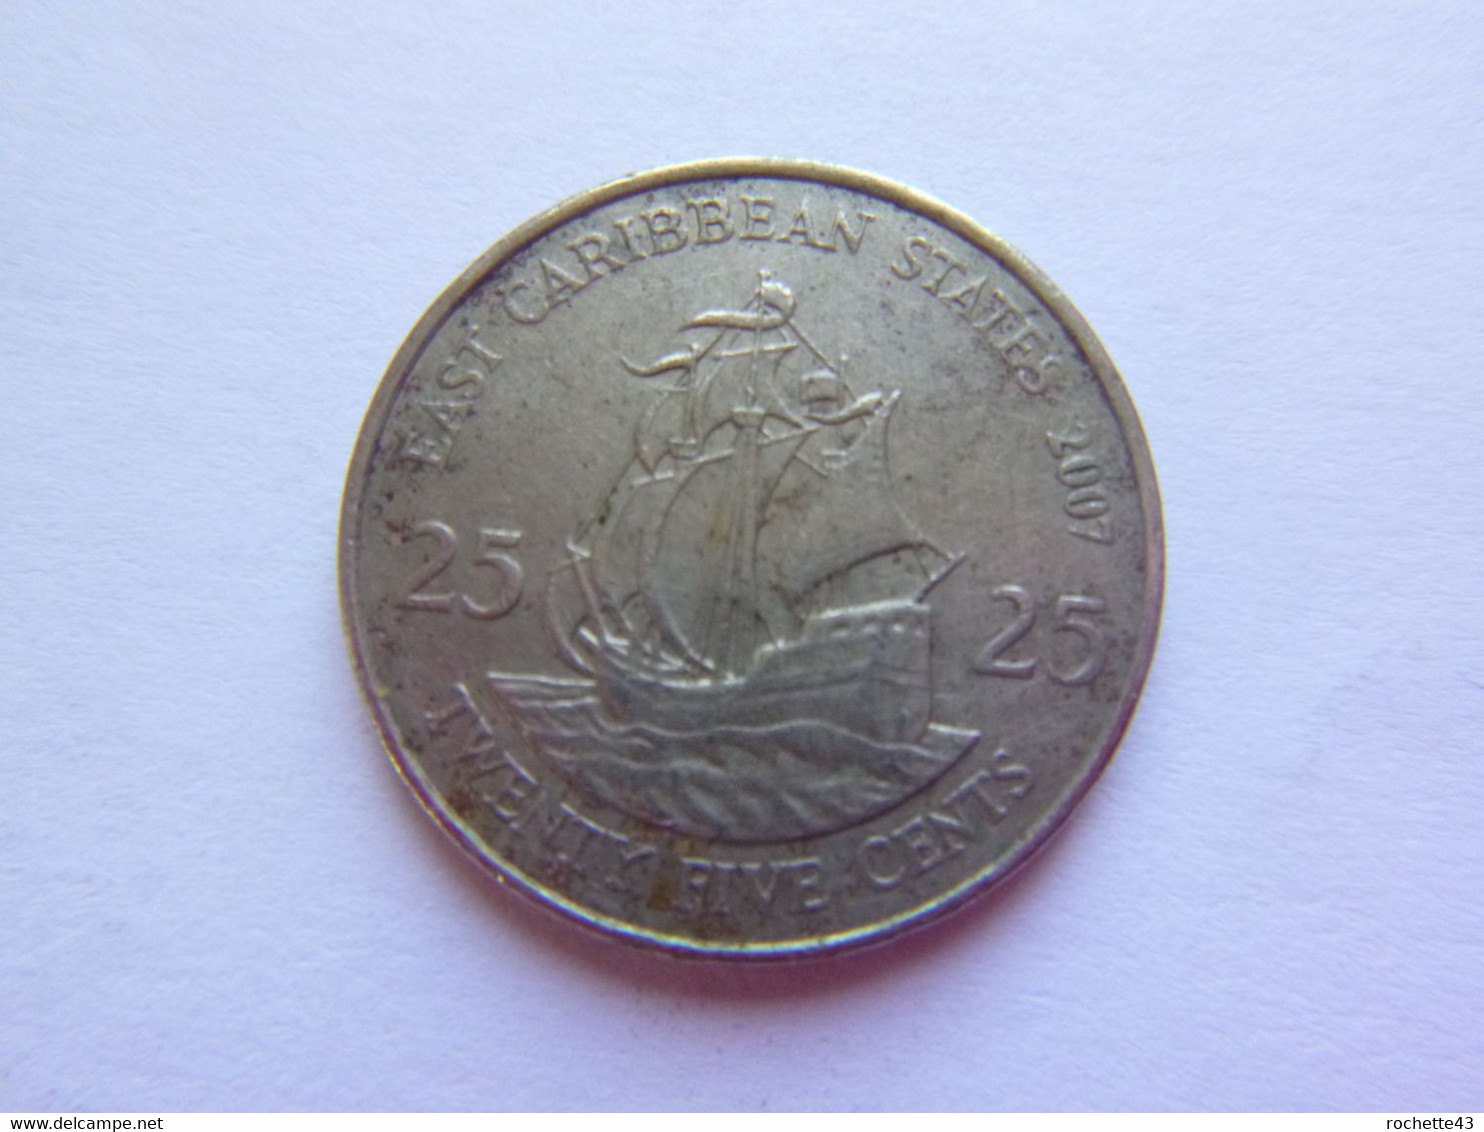 Etats Des Caraïbes Orientales - East Caribbean States - 25 Cents 2007 Elizabeth II - Pièce Monnaie Coin - Caraïbes Orientales (Etats Des)